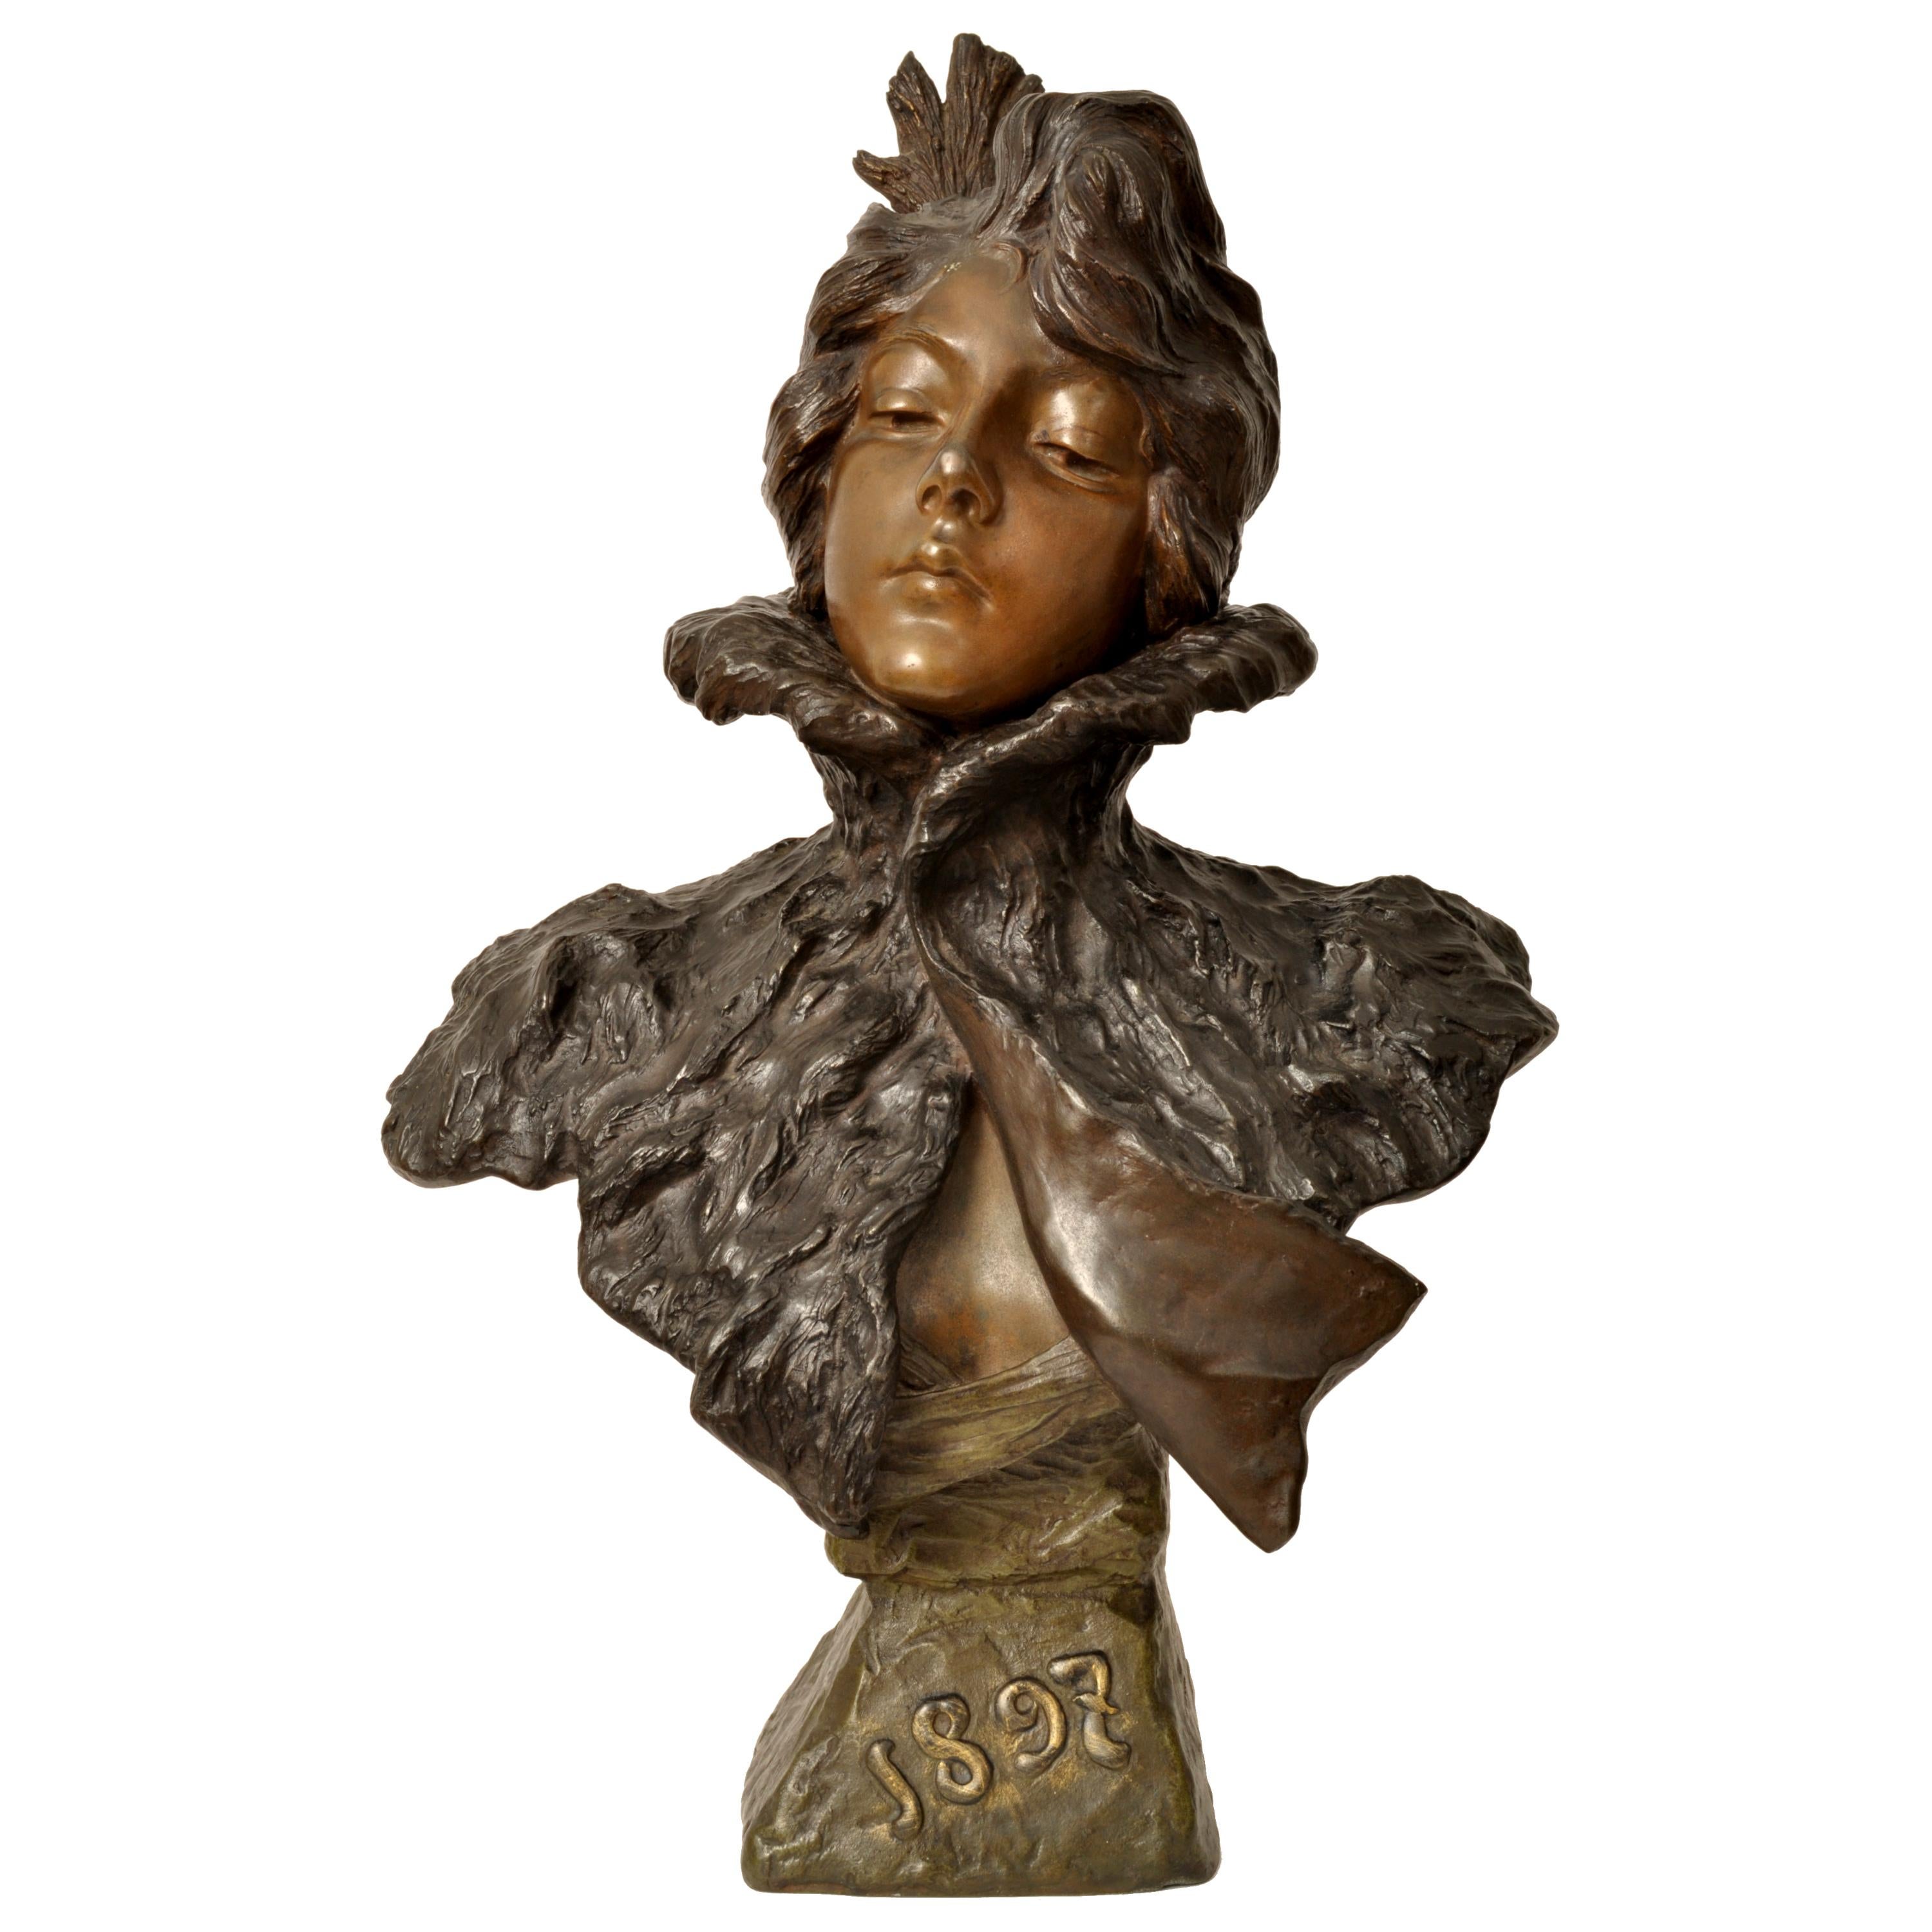 Emmanuel Villanis Figurative Sculpture - Antique French Art Nouveau Bronze Female Bust Sculpture "1897" Emanuel Villanis